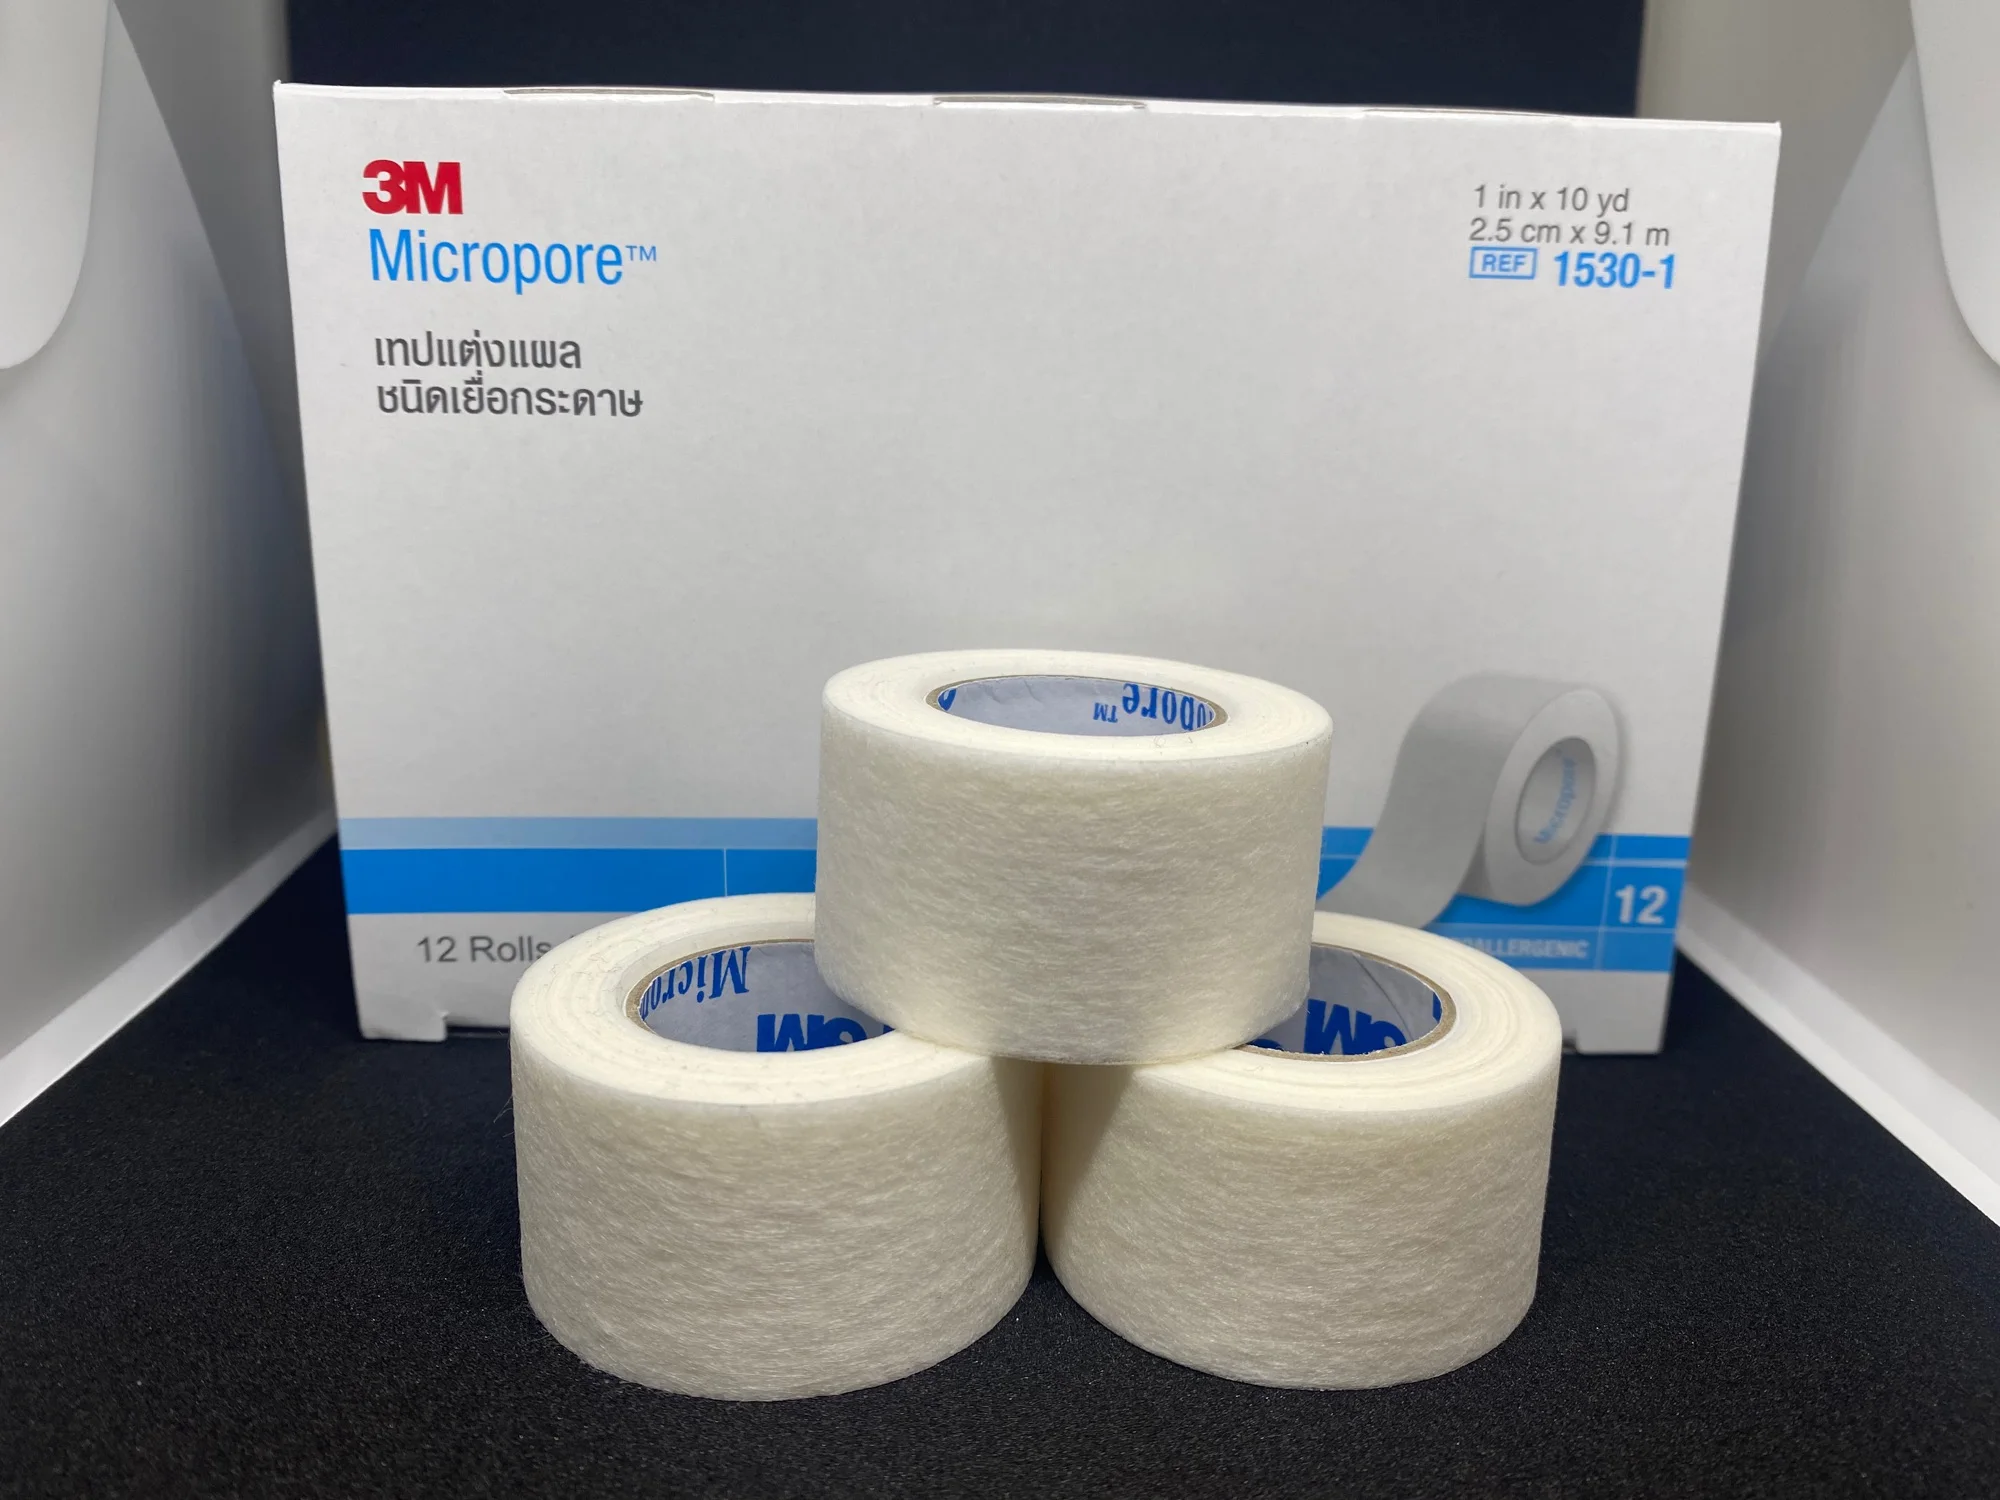 3M Micropore เทปแบ่งขาย 1 ม้วน จากแพ็คยกกล่อง แทปแต่งแผลเยื่อกระดาษ ความยาว 10 หลา